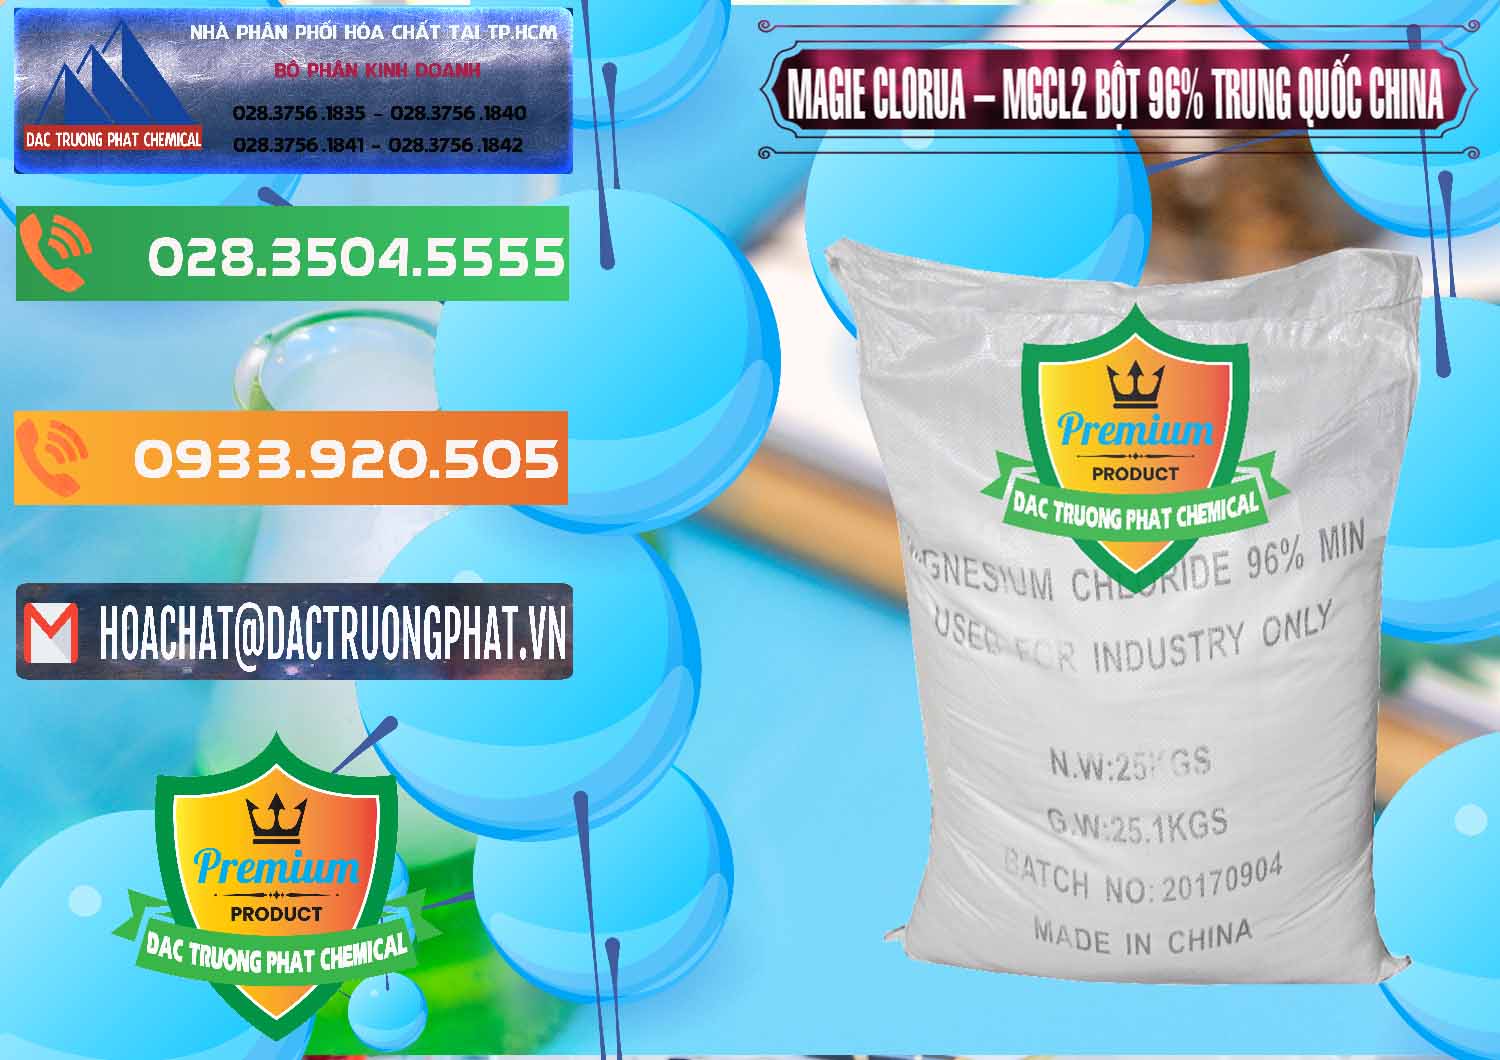 Công ty cung cấp và bán Magie Clorua – MGCL2 96% Dạng Bột Bao Chữ Đen Trung Quốc China - 0205 - Cty cung cấp - bán hóa chất tại TP.HCM - hoachatxulynuoc.com.vn